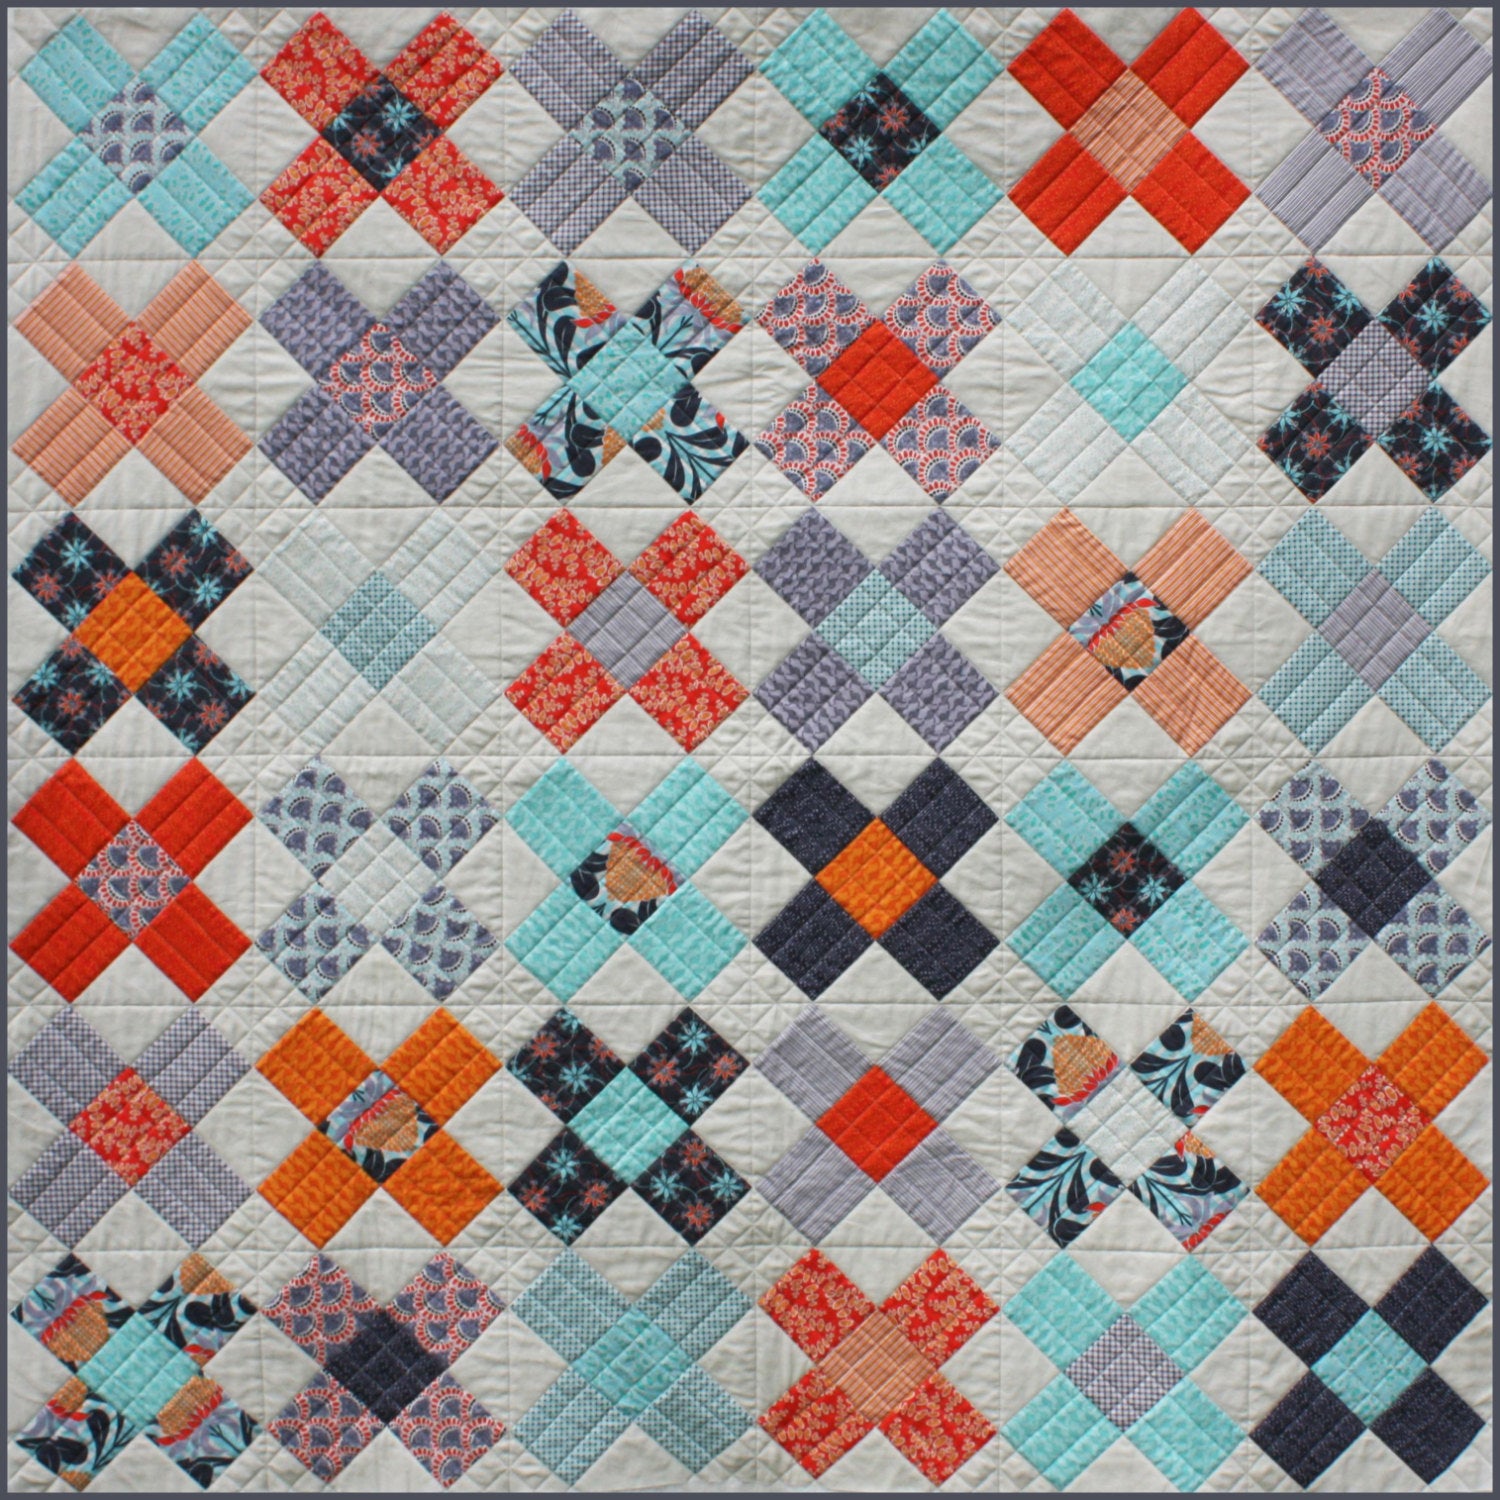 King's Cross Quilt Mini Pattern - PDF